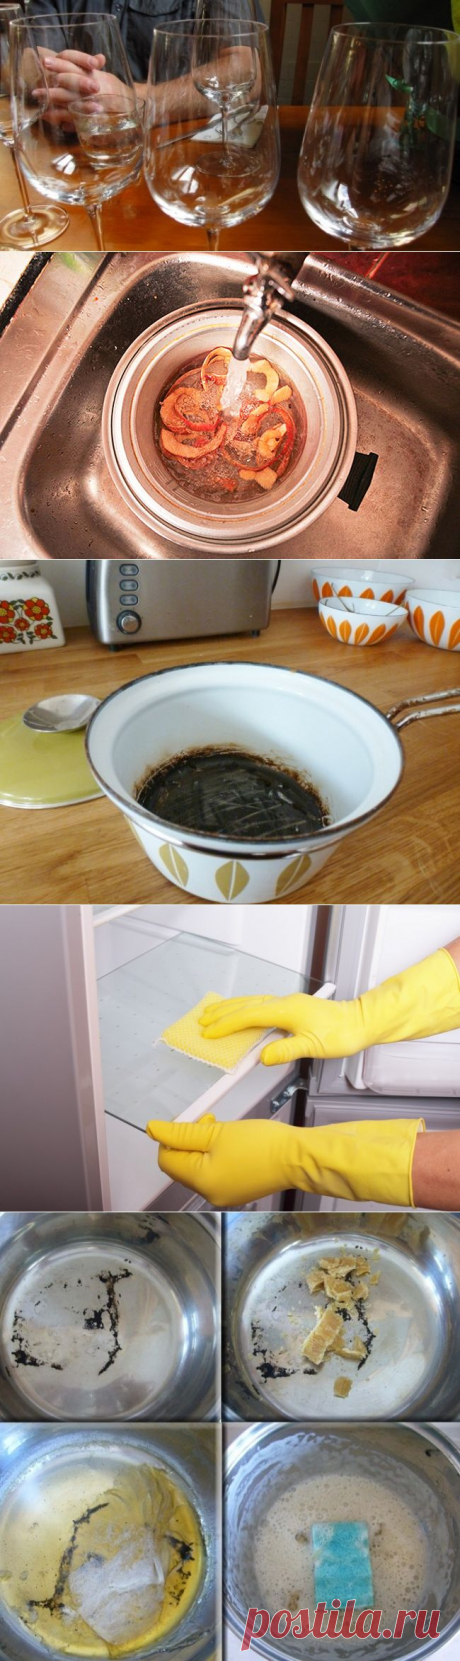 10 советов, с которыми вы полюбите уборку на кухне — Мой дом